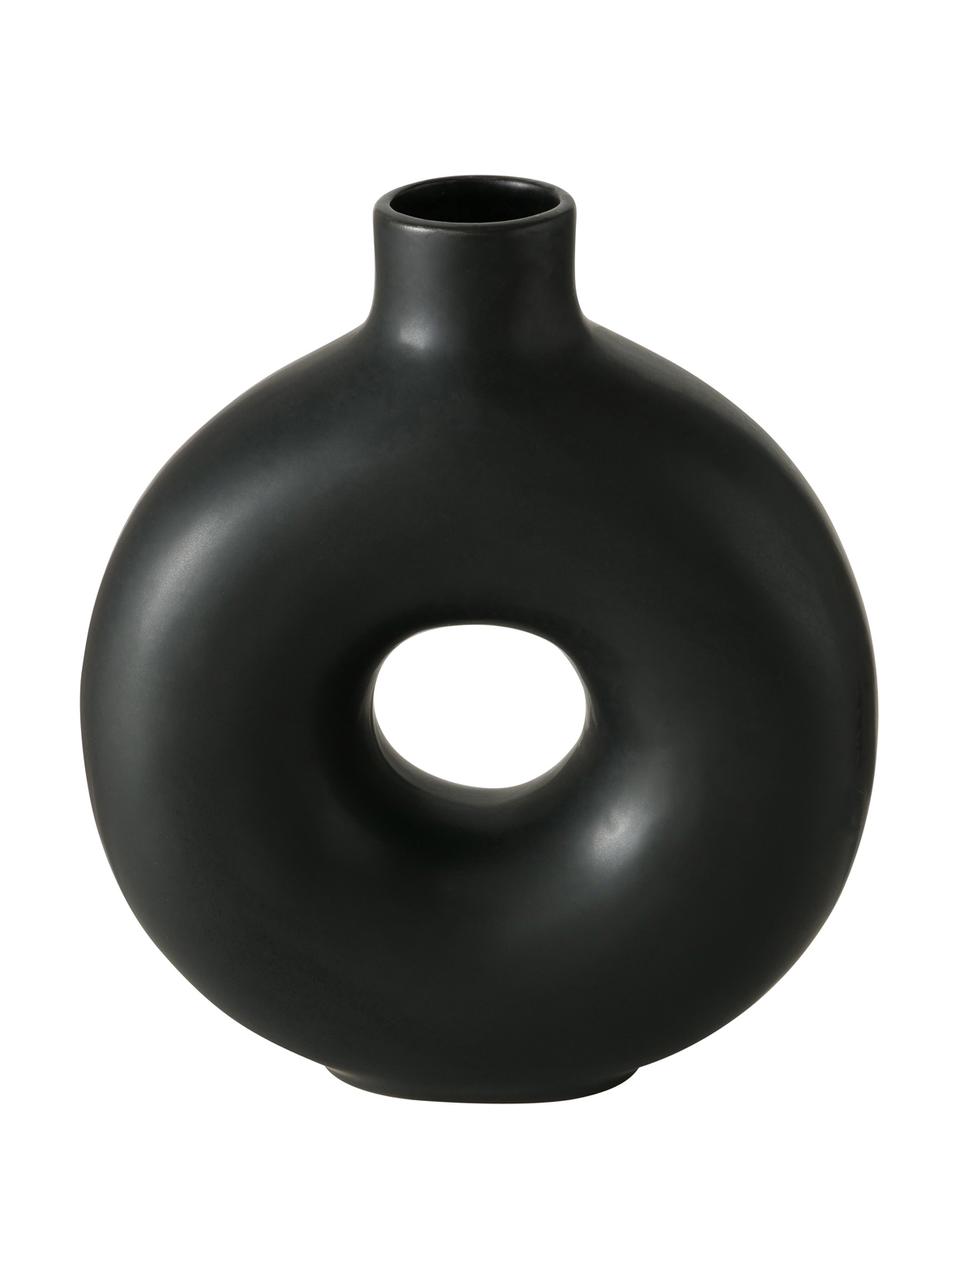 Handgefertigte Design-Vase Lanyo aus Steingut, Steingut, Schwarz, B 17 x H 20 cm